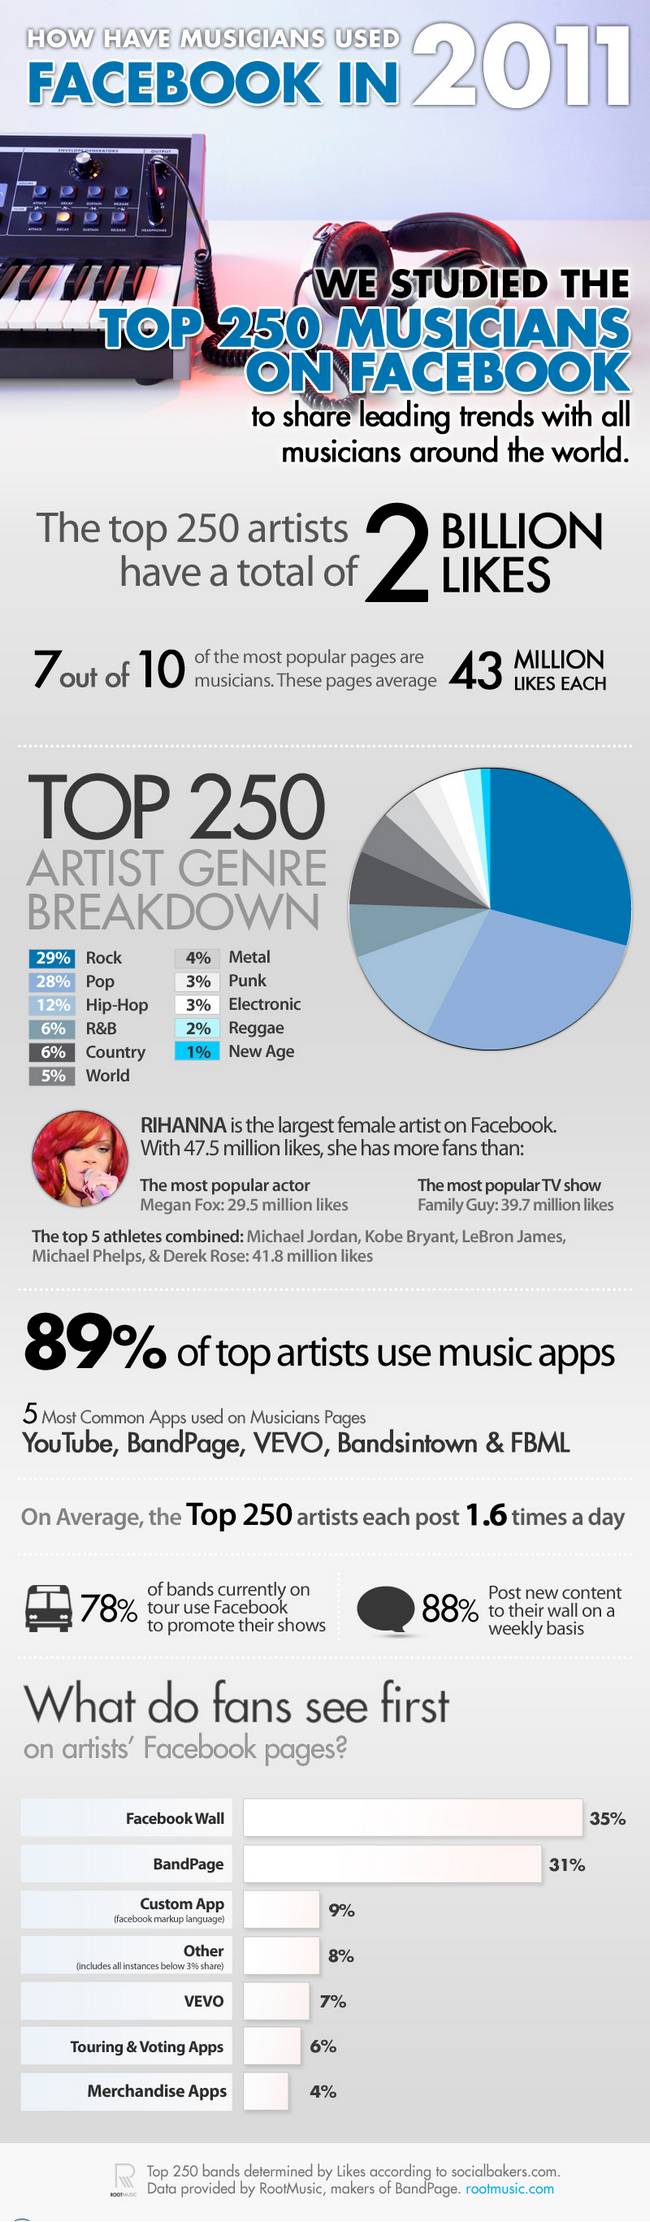 ¿Cómo han usado Facebook los músicos en el 2011? Cifras sorprendentes. 1